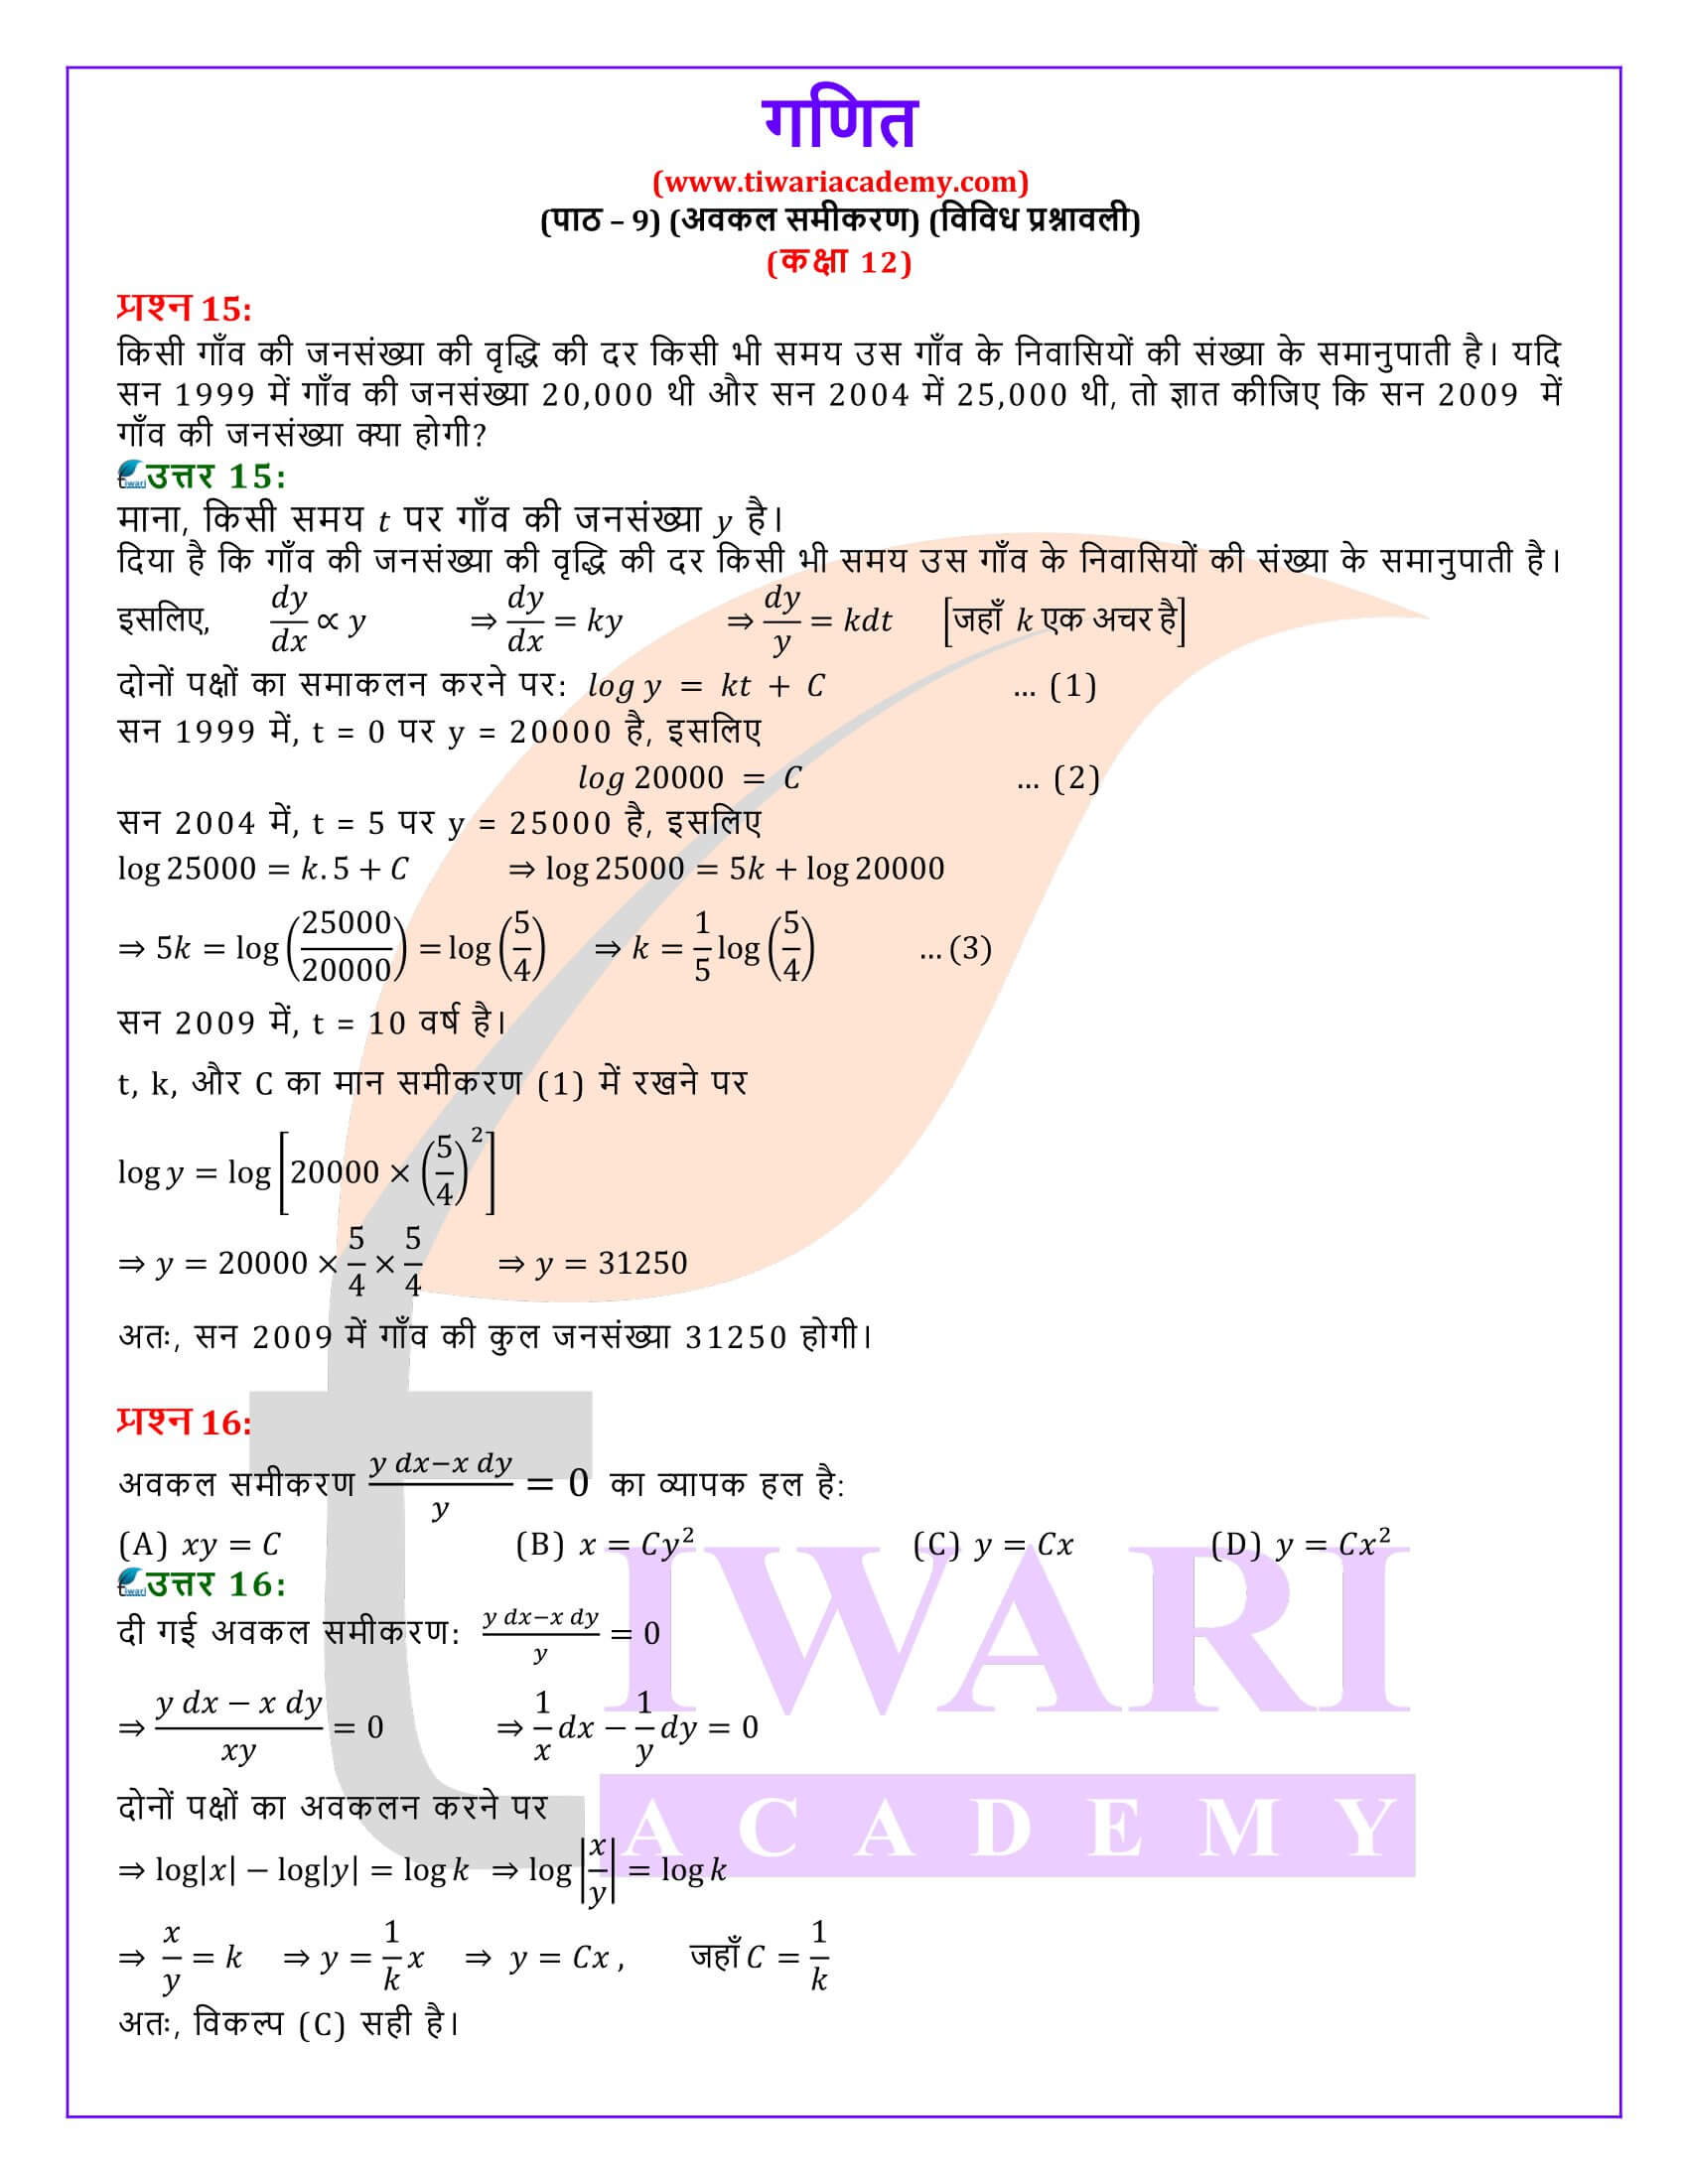 कक्षा 12 गणित अध्याय 9 विविध प्रश्नावली हिंदी मीडियम में